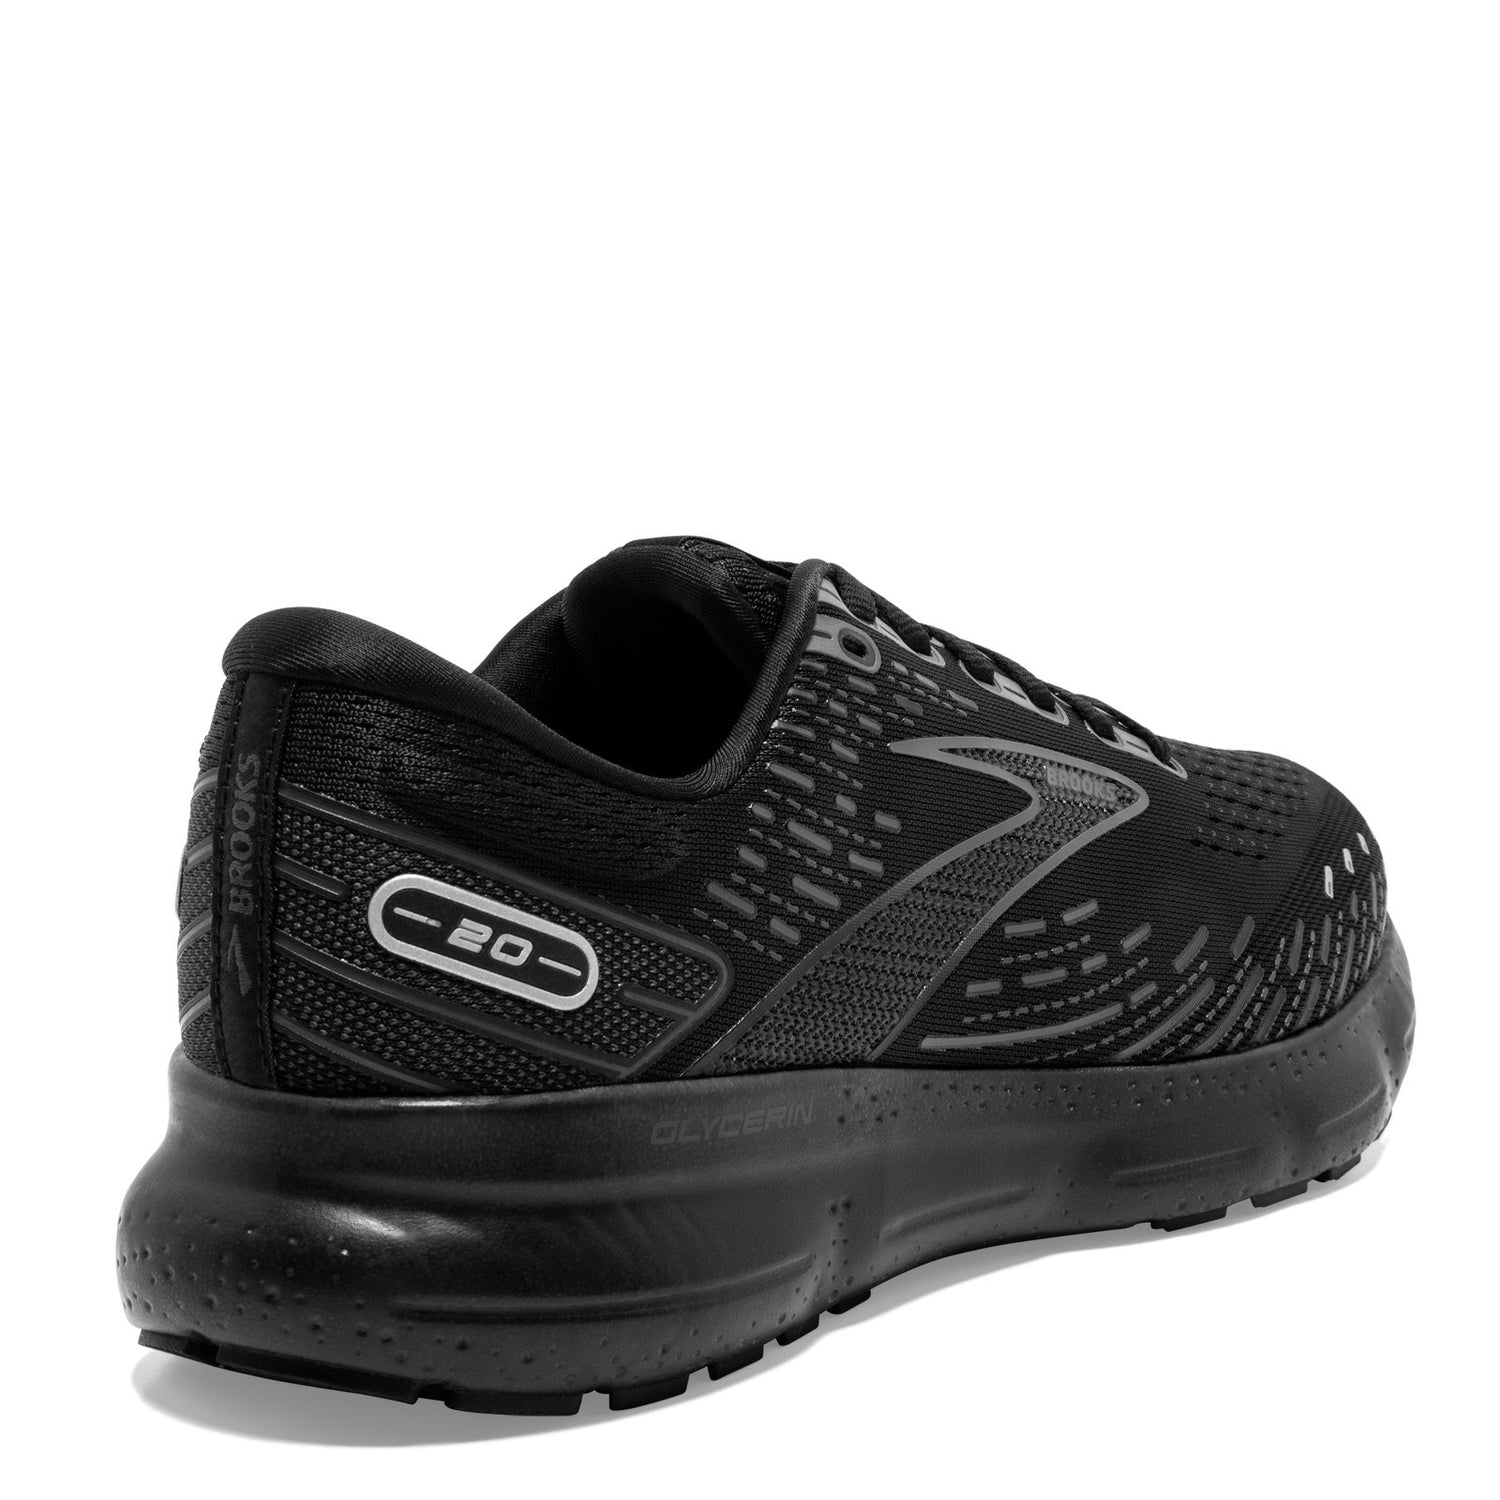 Peltz Shoes  Women's Brooks Glycerin 20 Running Shoe - Wide Width Black/Ebony 120369 1D 020